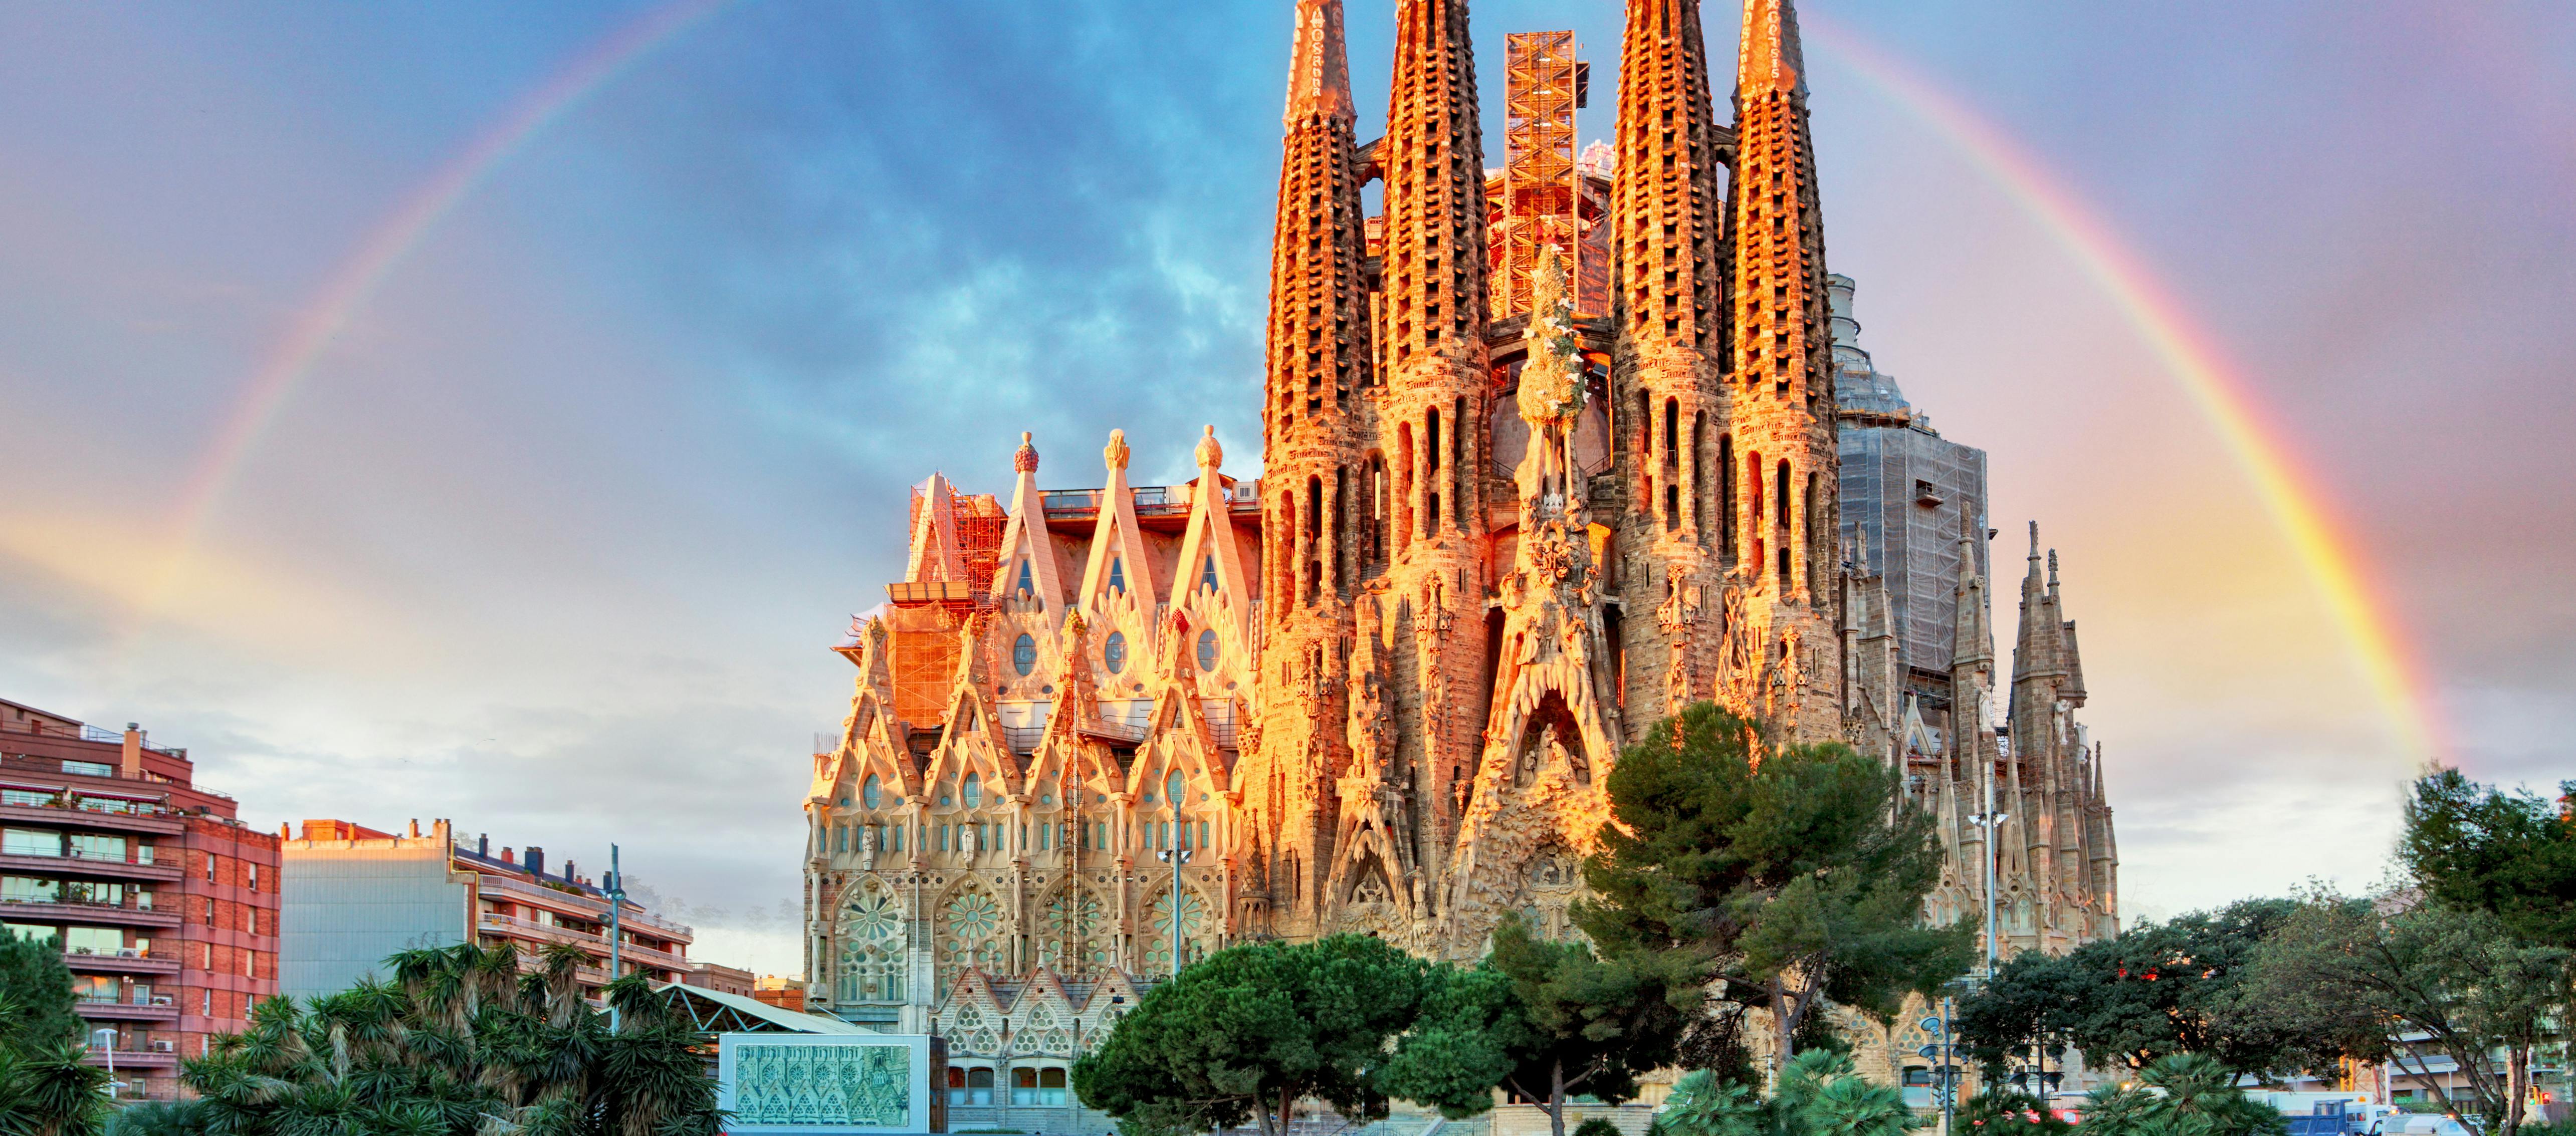 De beste dagtour van Barcelona met skip-the-line op de Sagrada Familia